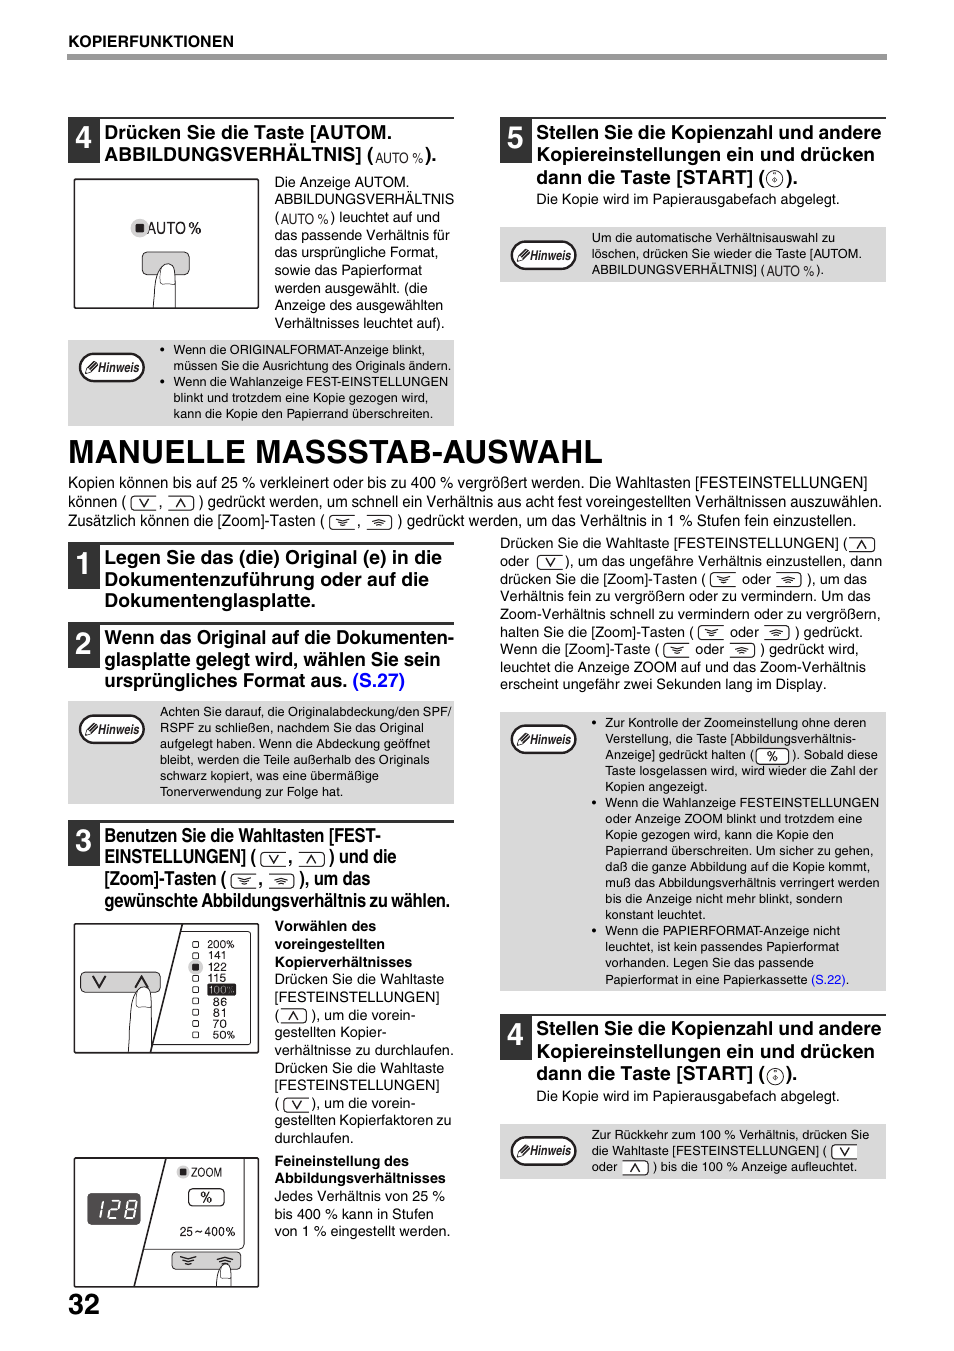 Manuelle massstab-auswahl, S.32), Manuelle massstab-auswahl" (s.32) | Sharp AR-5618 Benutzerhandbuch | Seite 34 / 108